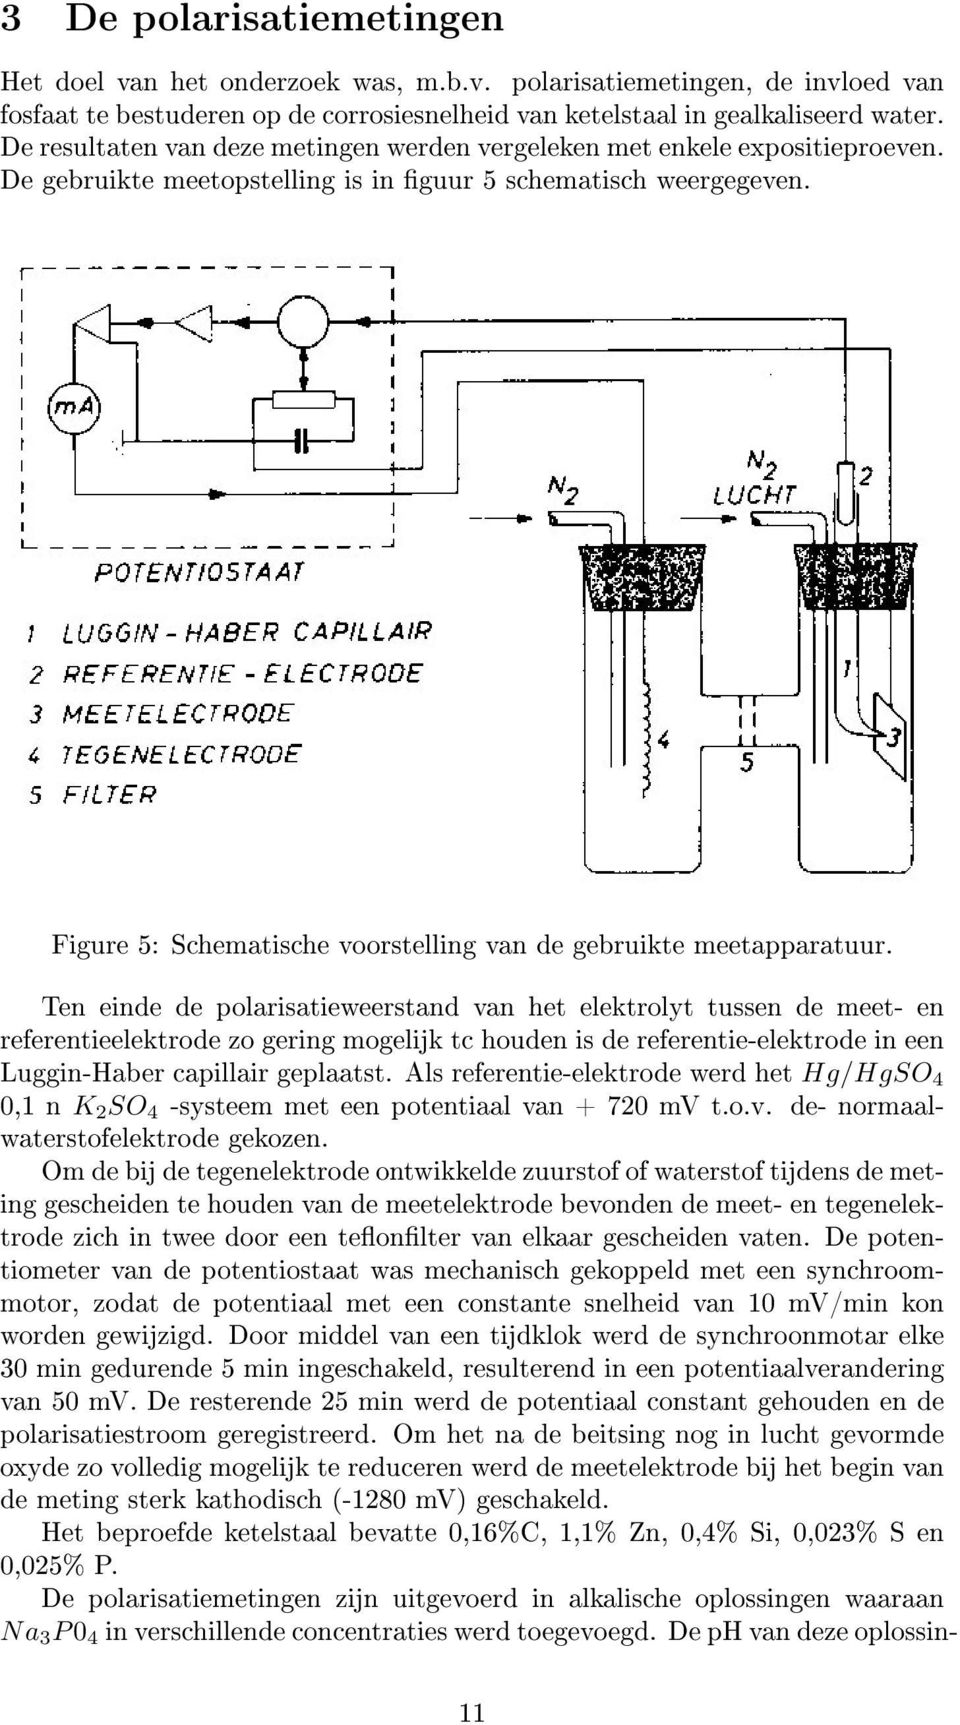 Figure 5: Schematische voorstelling van de gebruikte meetapparatuur.